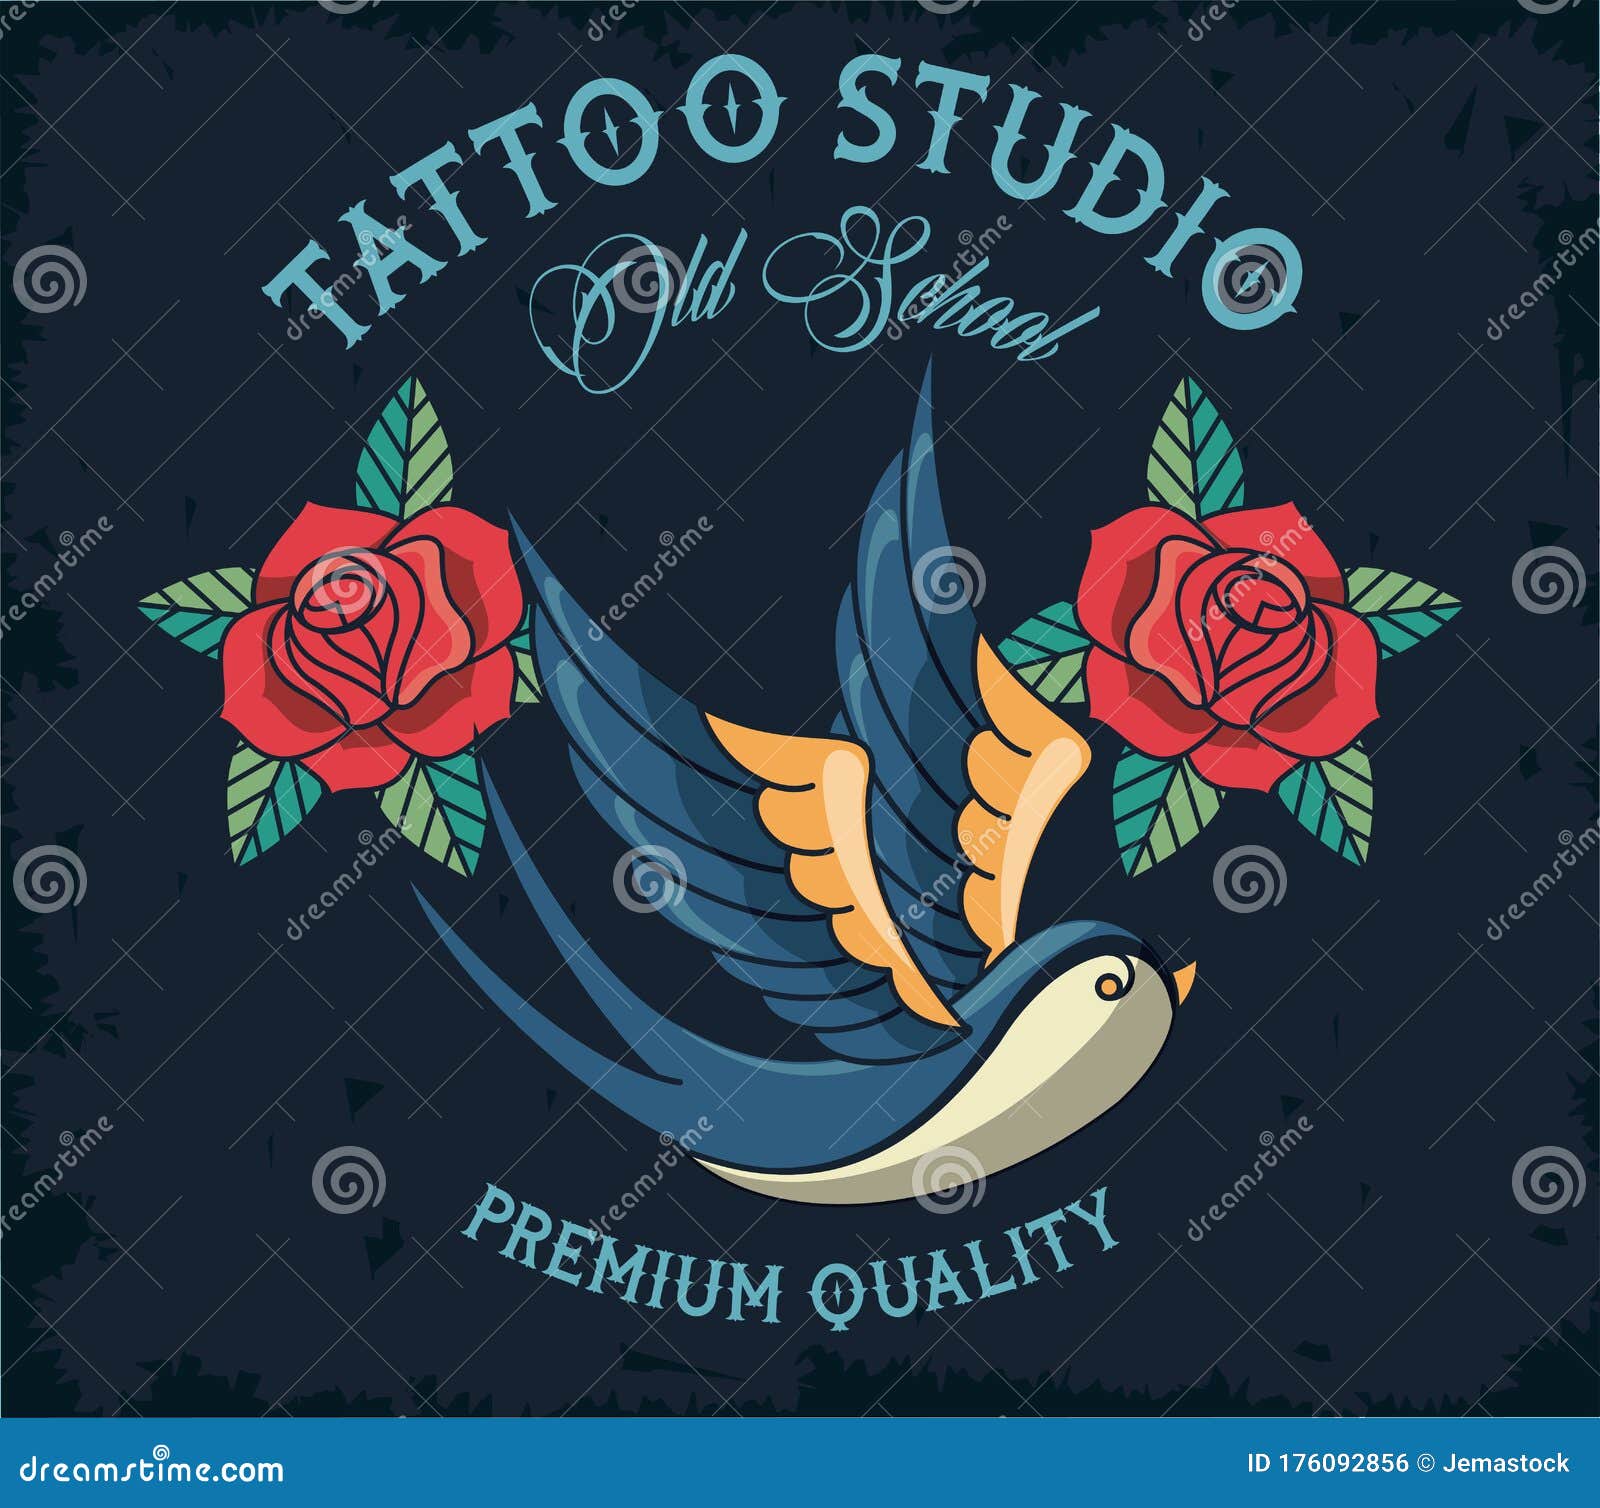 Tattoo uploaded by BLUE BIRD Tattoo Studio  Tattoodo